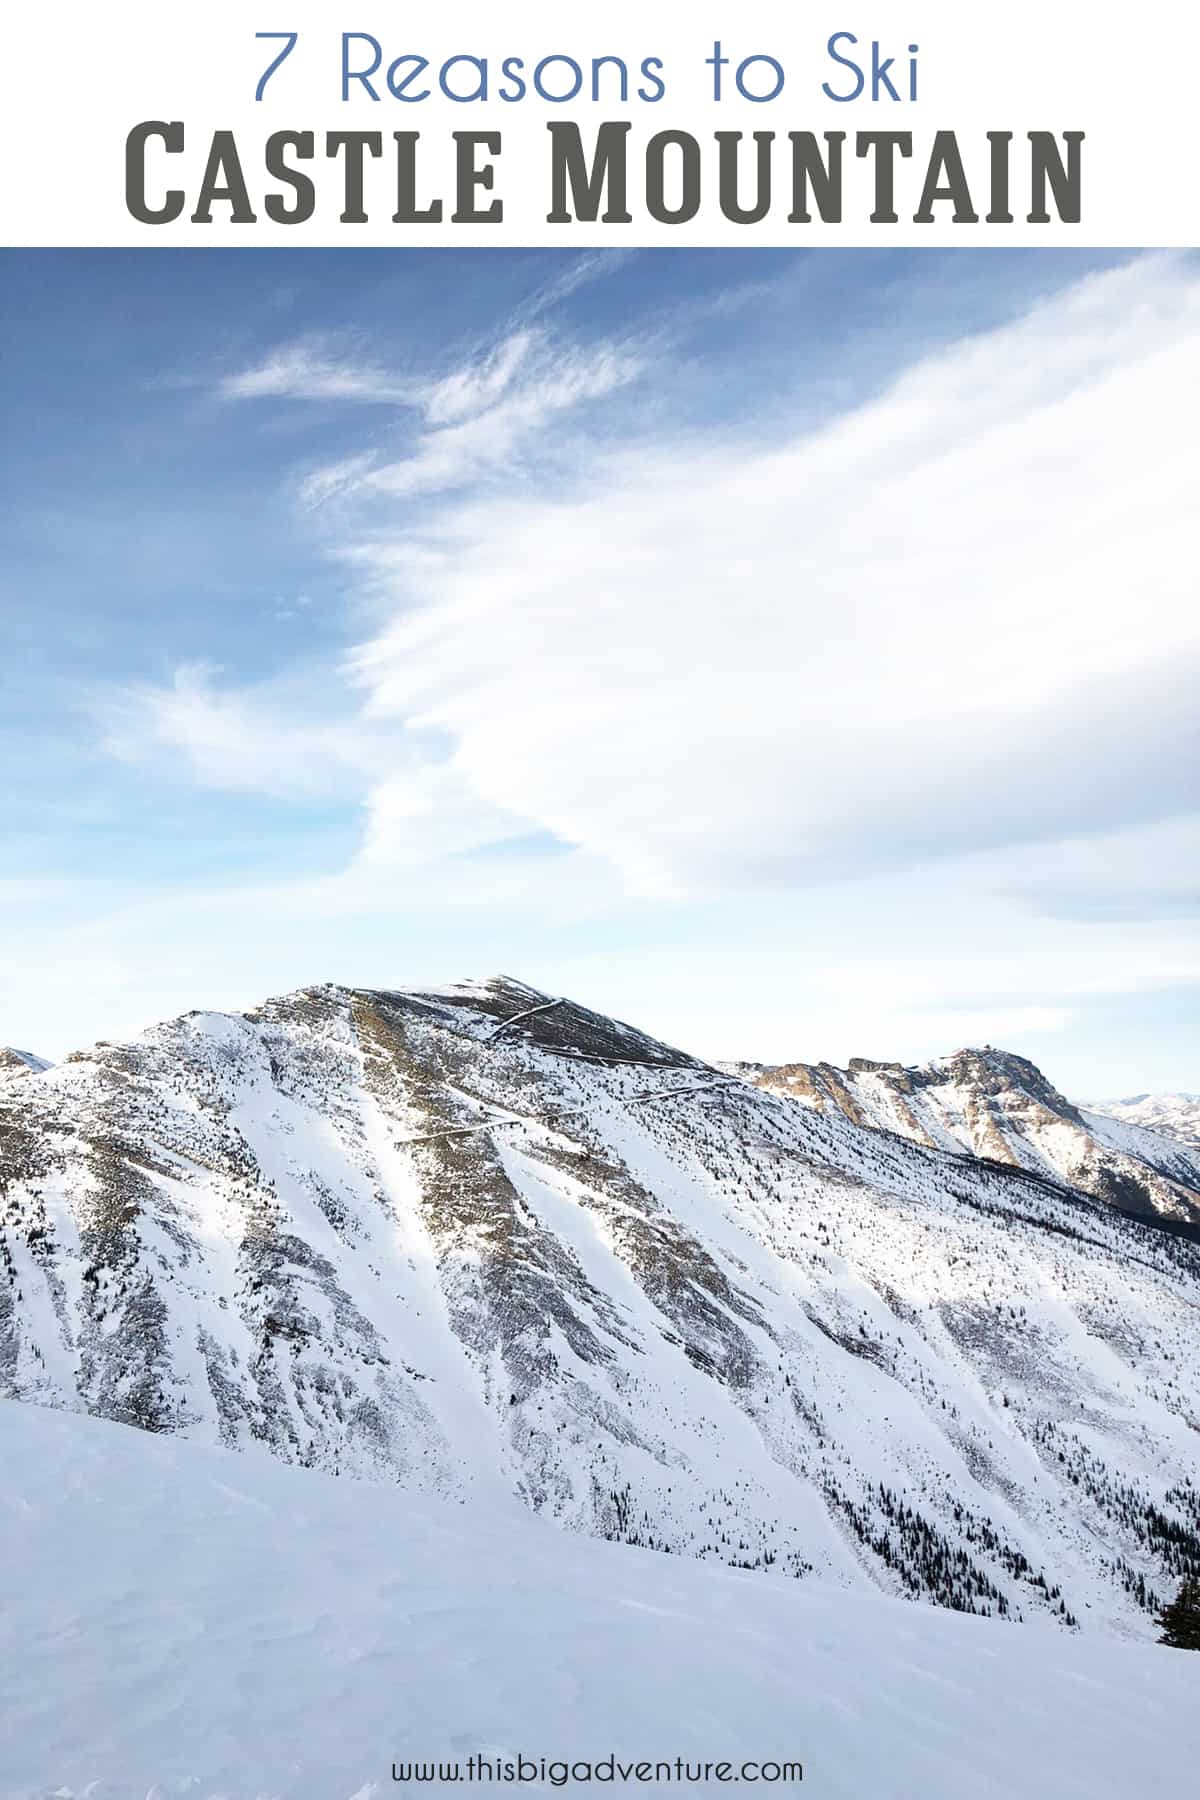 7 Reasons to Ski Castle Mountain